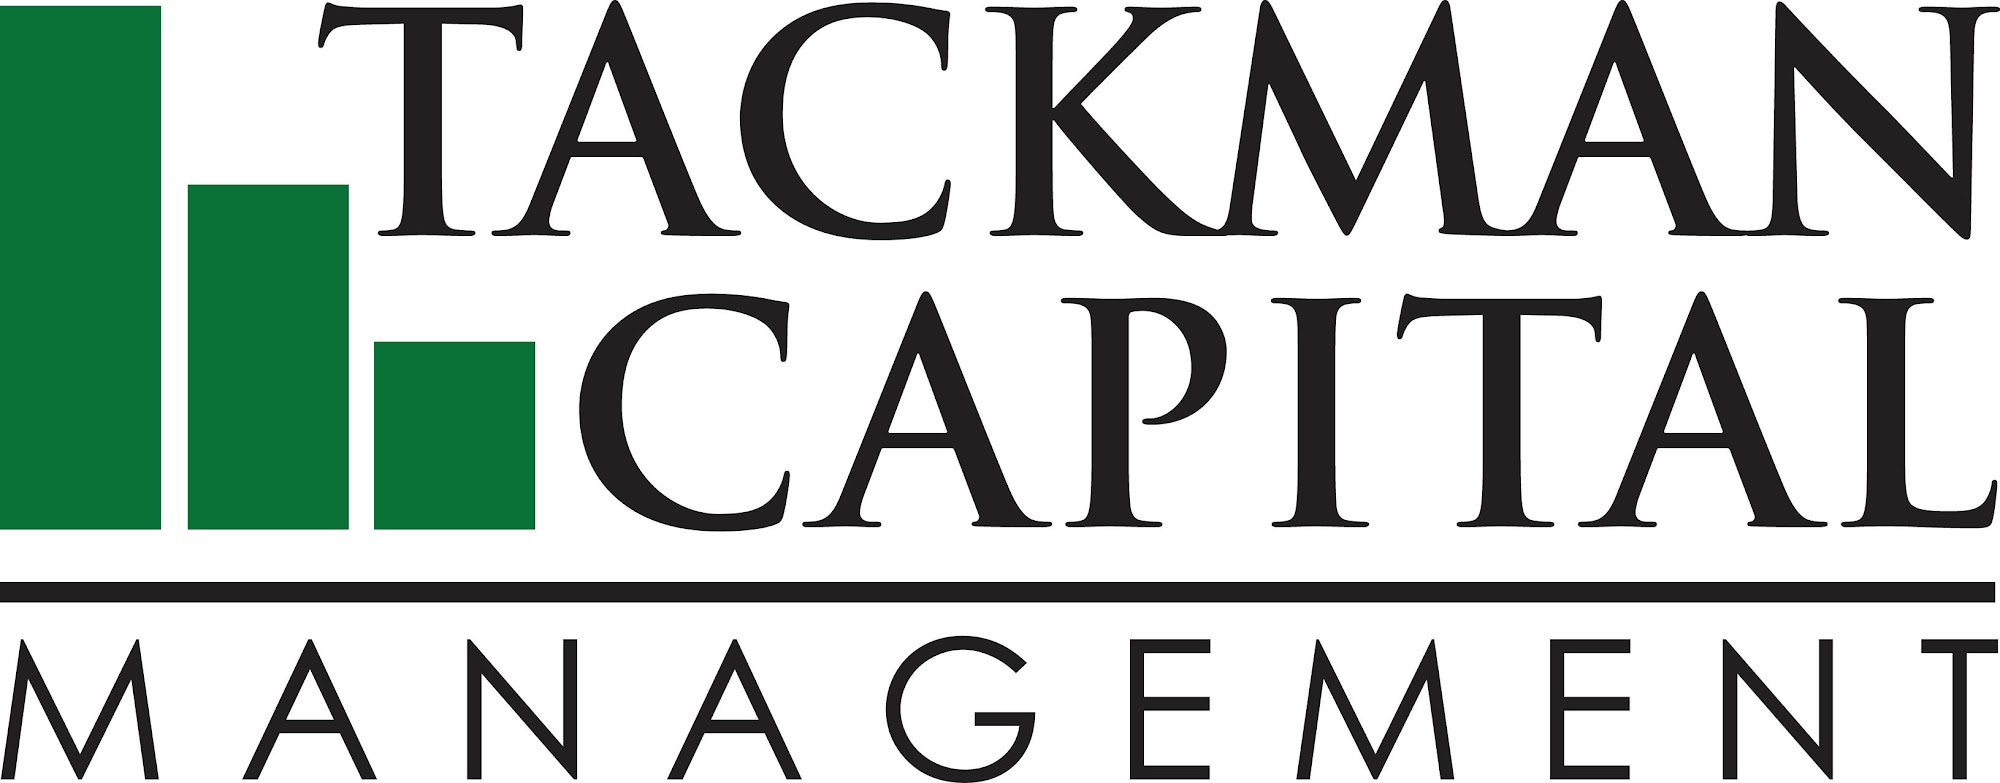 Tackman Capital Management